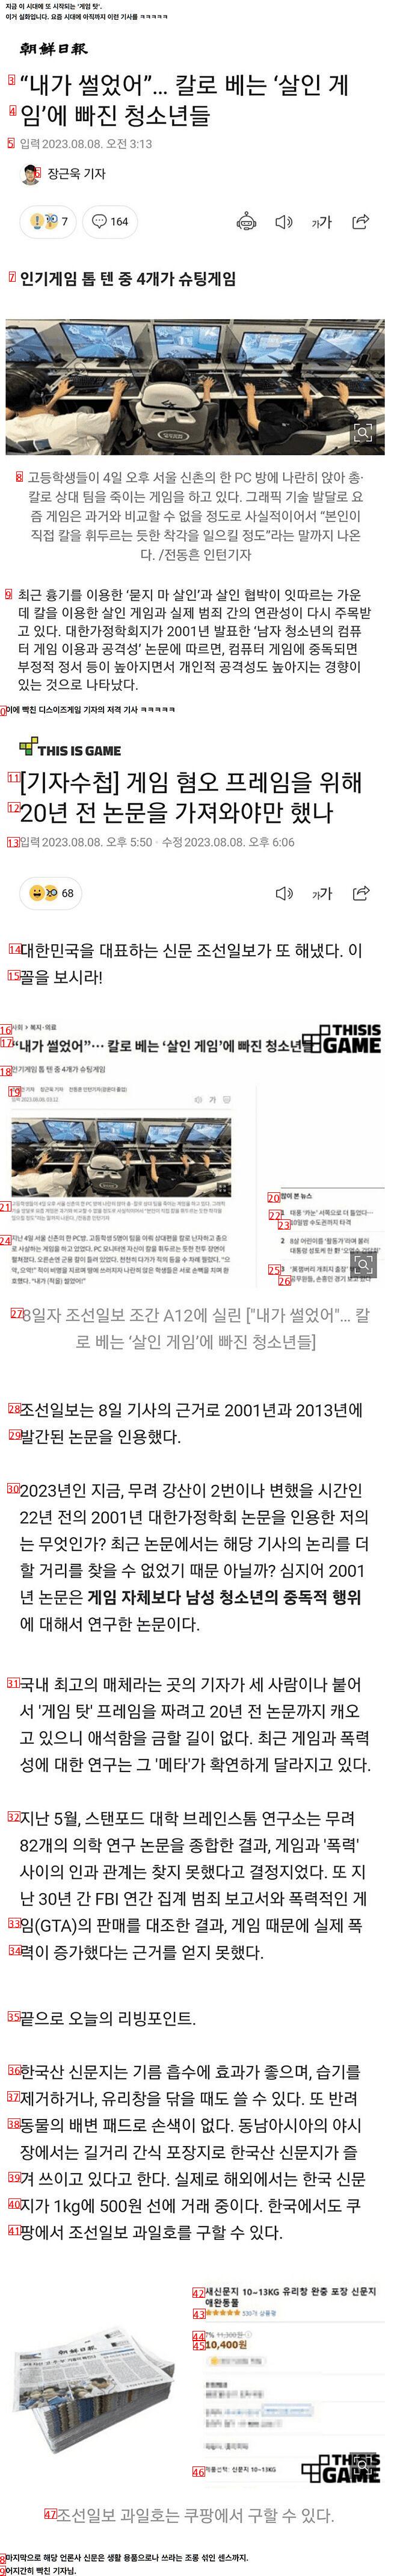 剣闘ゲーム関連の朝鮮日報記事を狙撃した記者